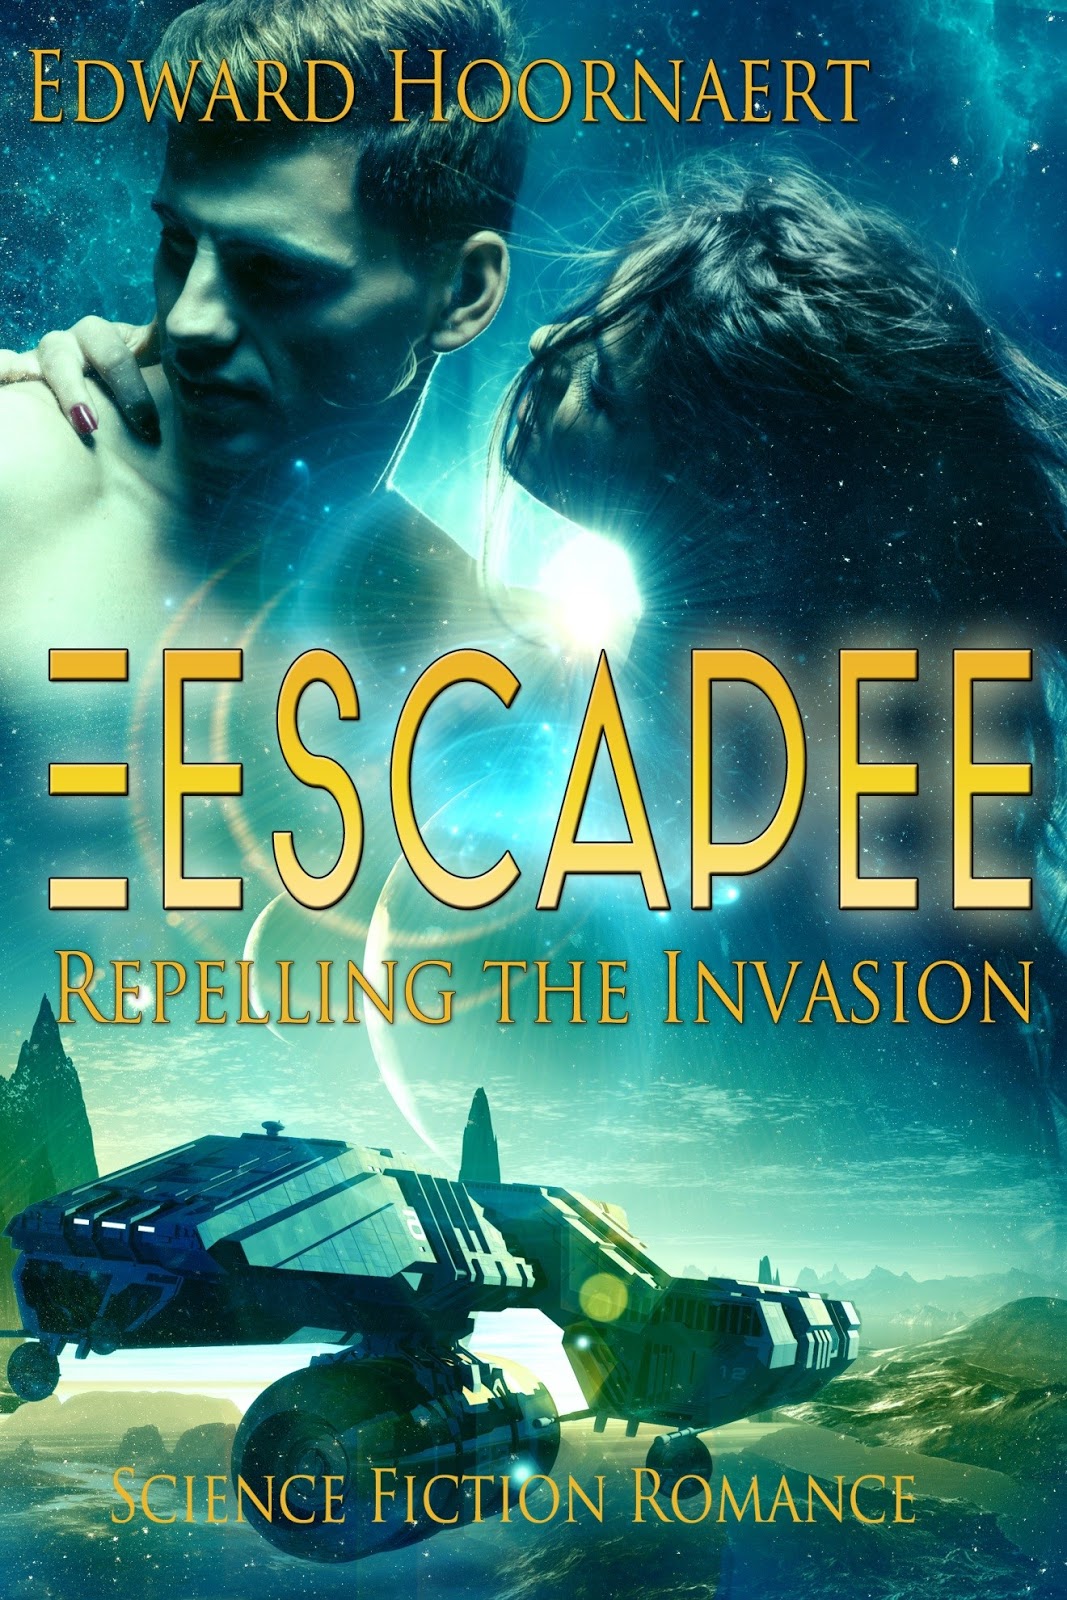 Science Fiction Romance. Обложки Space Invasion. Escapee. Romance fiction